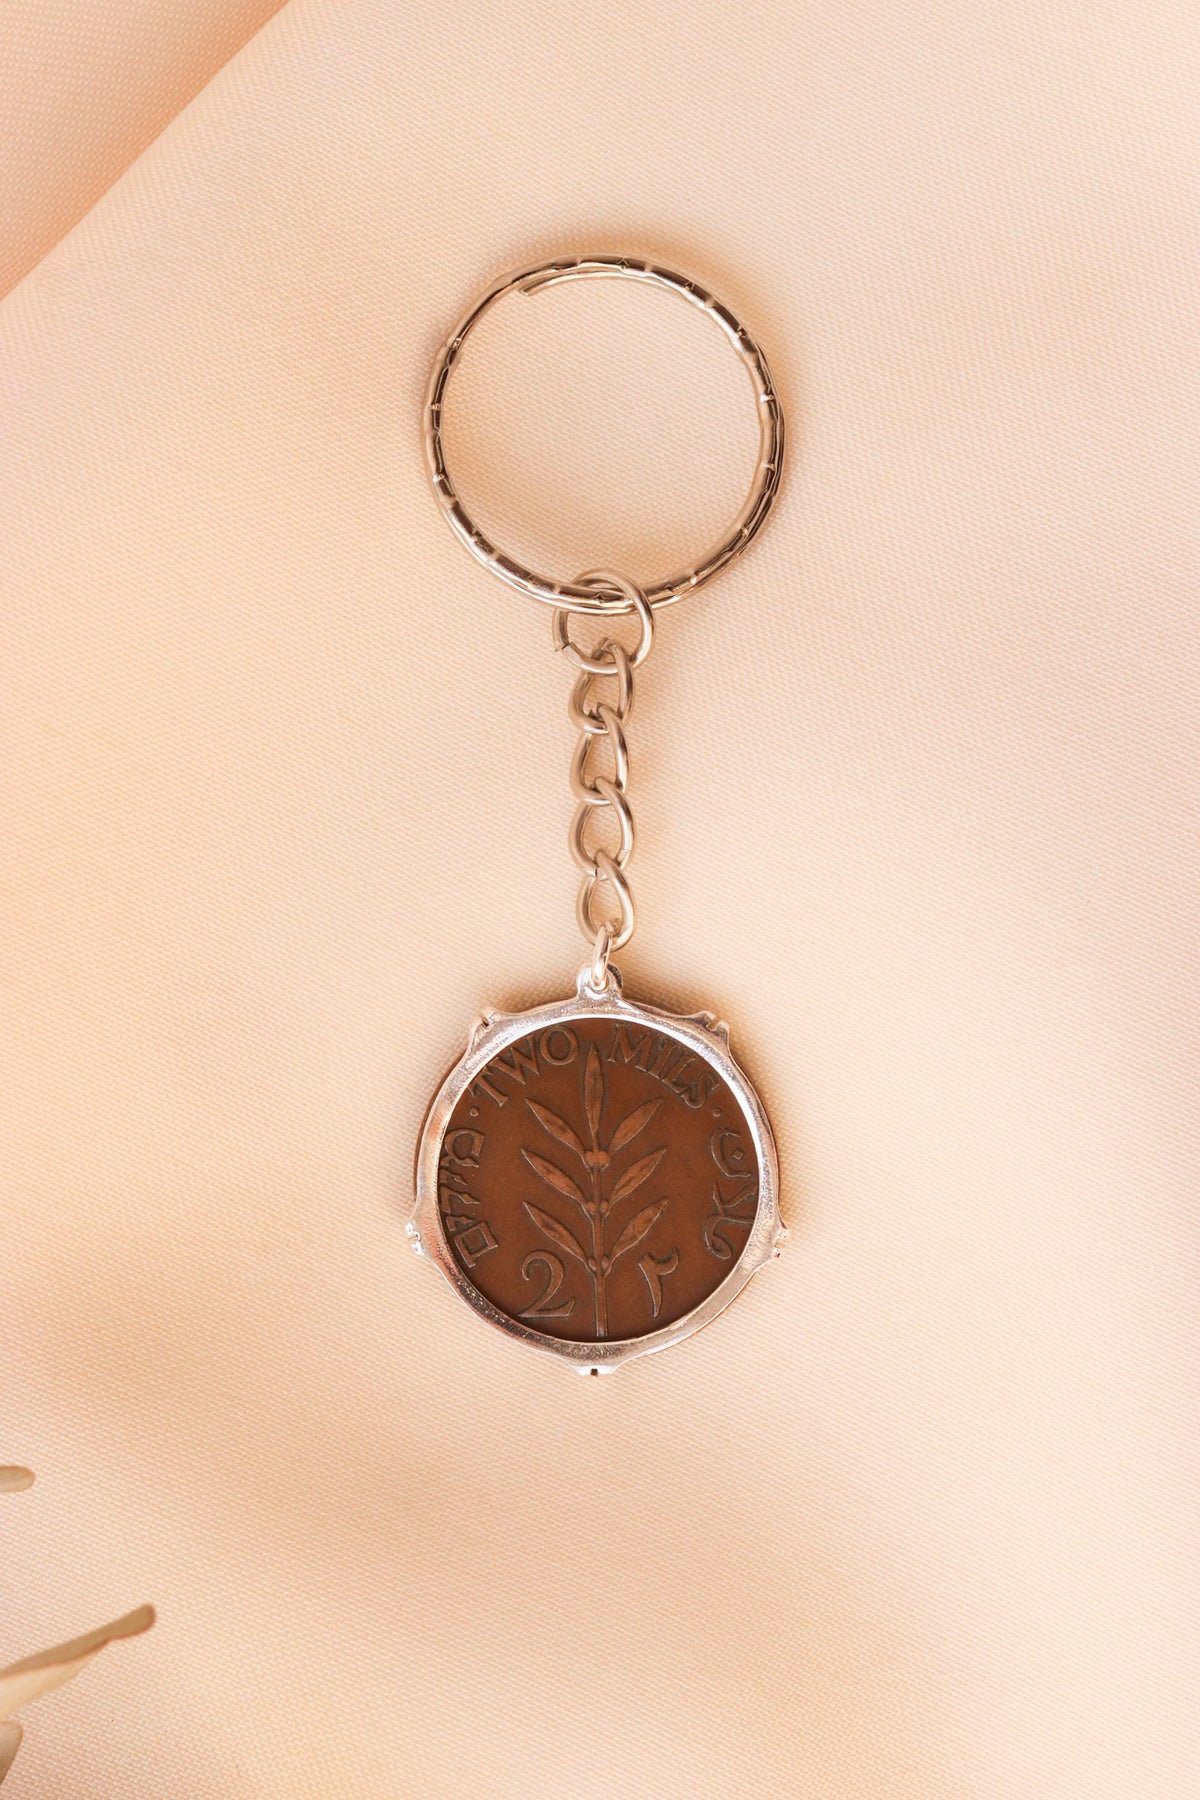 ميدالية مفاتيح العملة الفلسطينية ٢مل مع ايطار تاجي